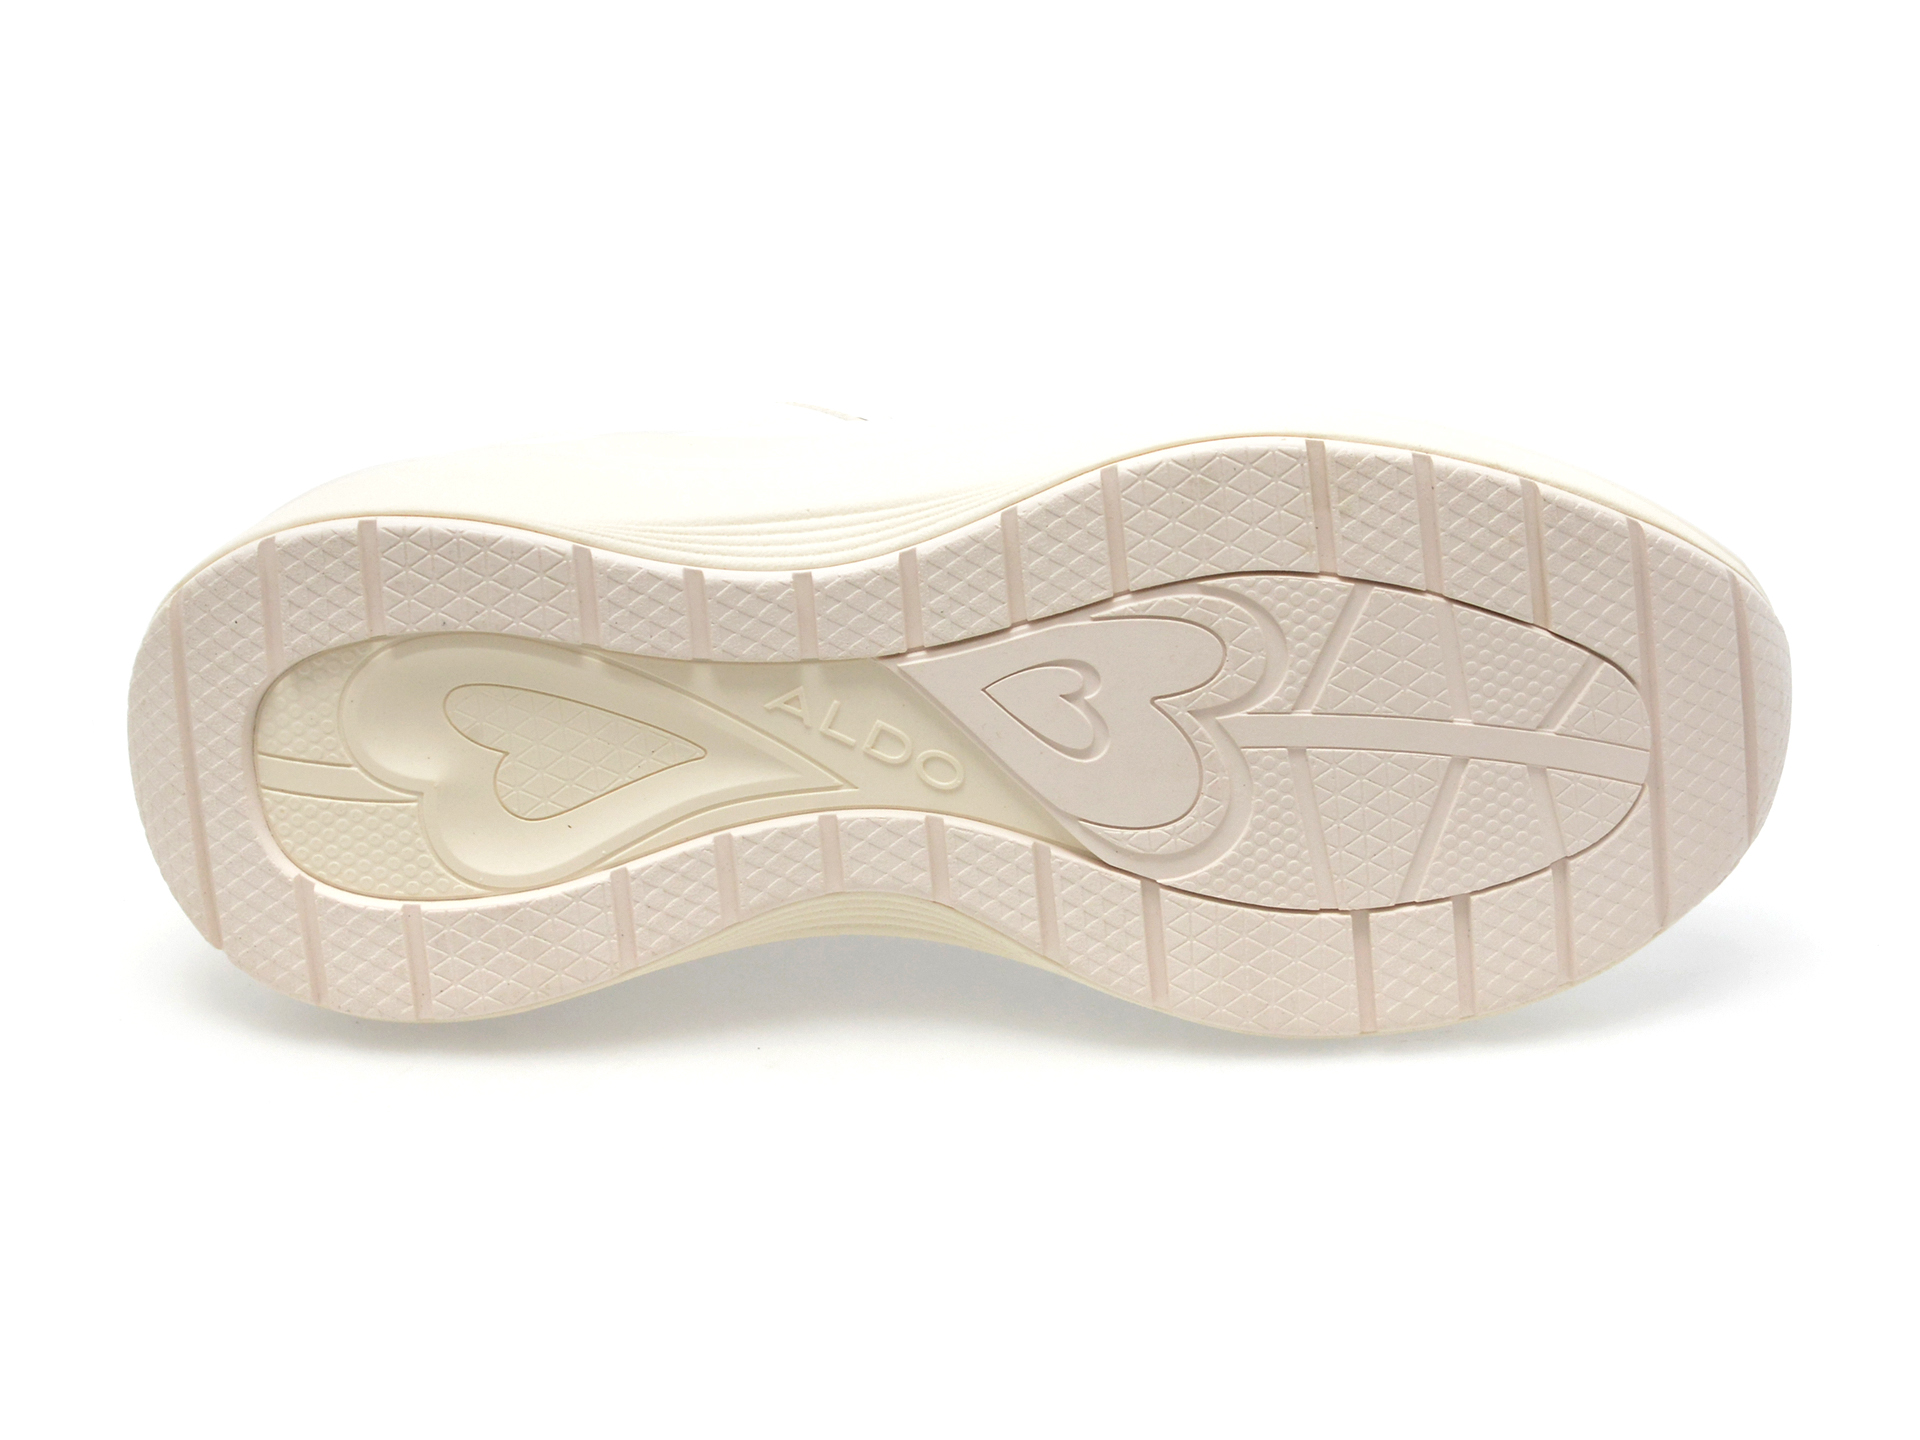 Pantofi ALDO albi, ETIENE100, din piele ecologica